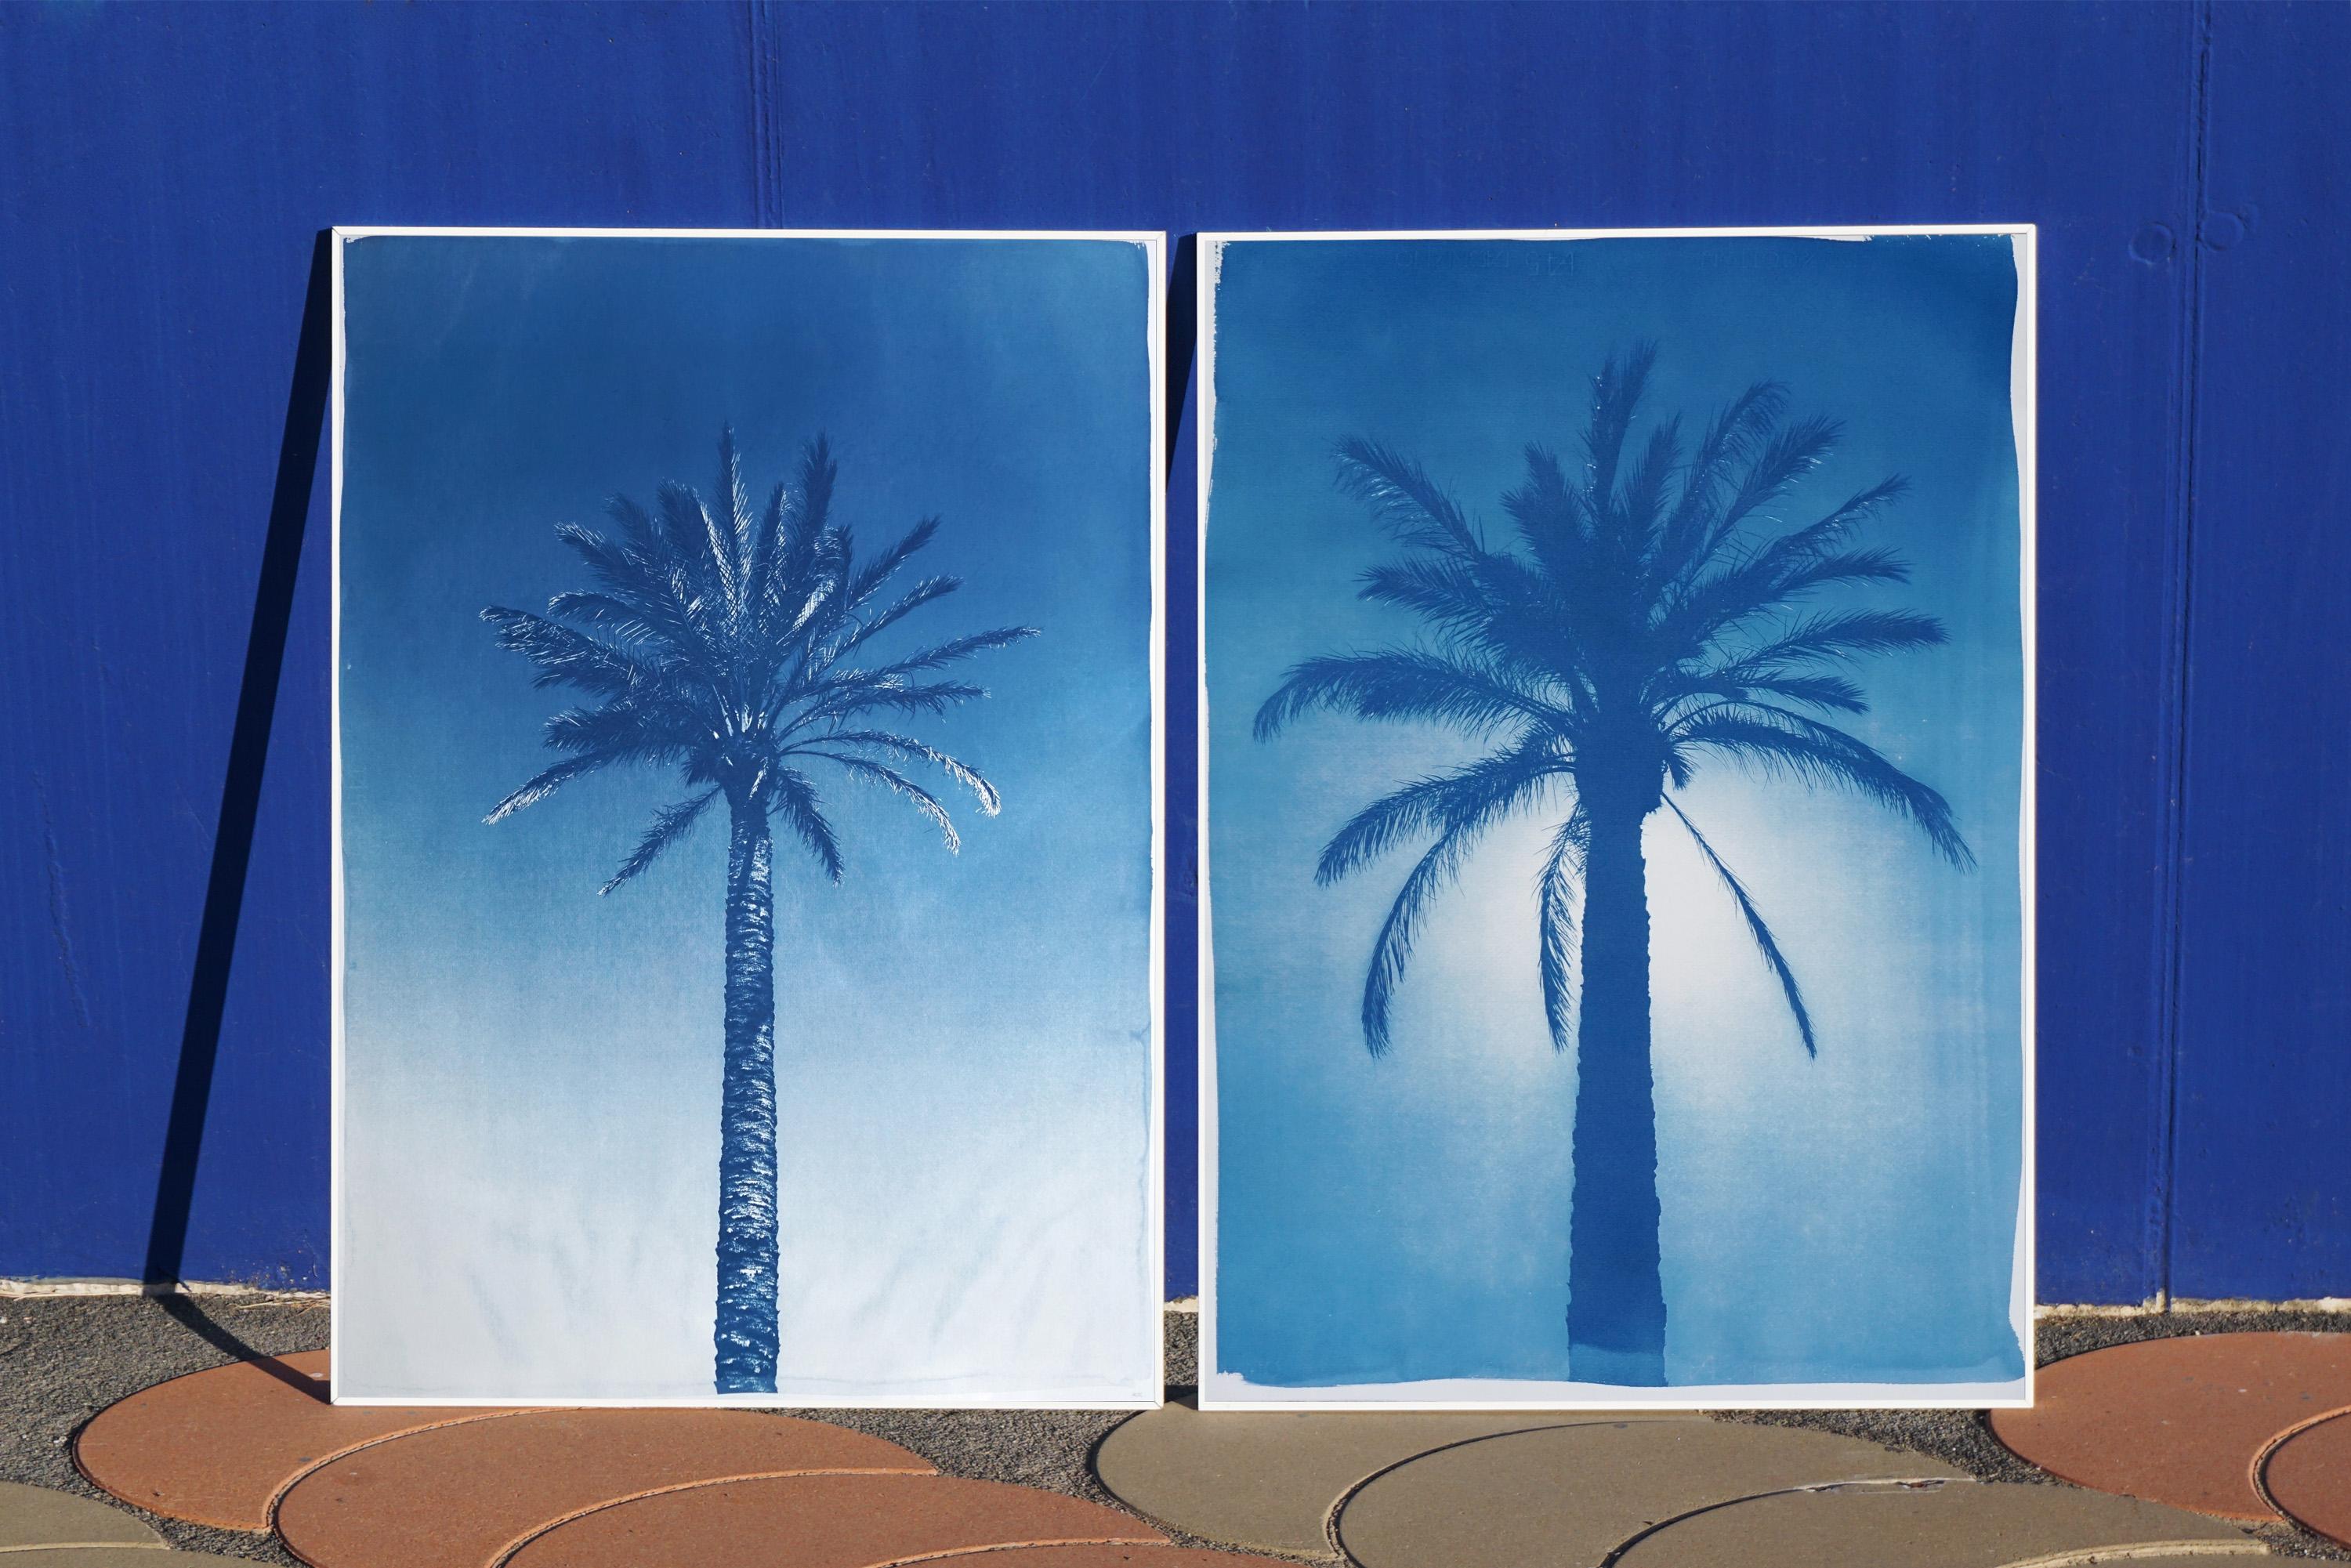 Duo de palmiers égyptiens bleus, diptyque botanique cyanotype sur papier, vintage moderne - Photograph de Kind of Cyan